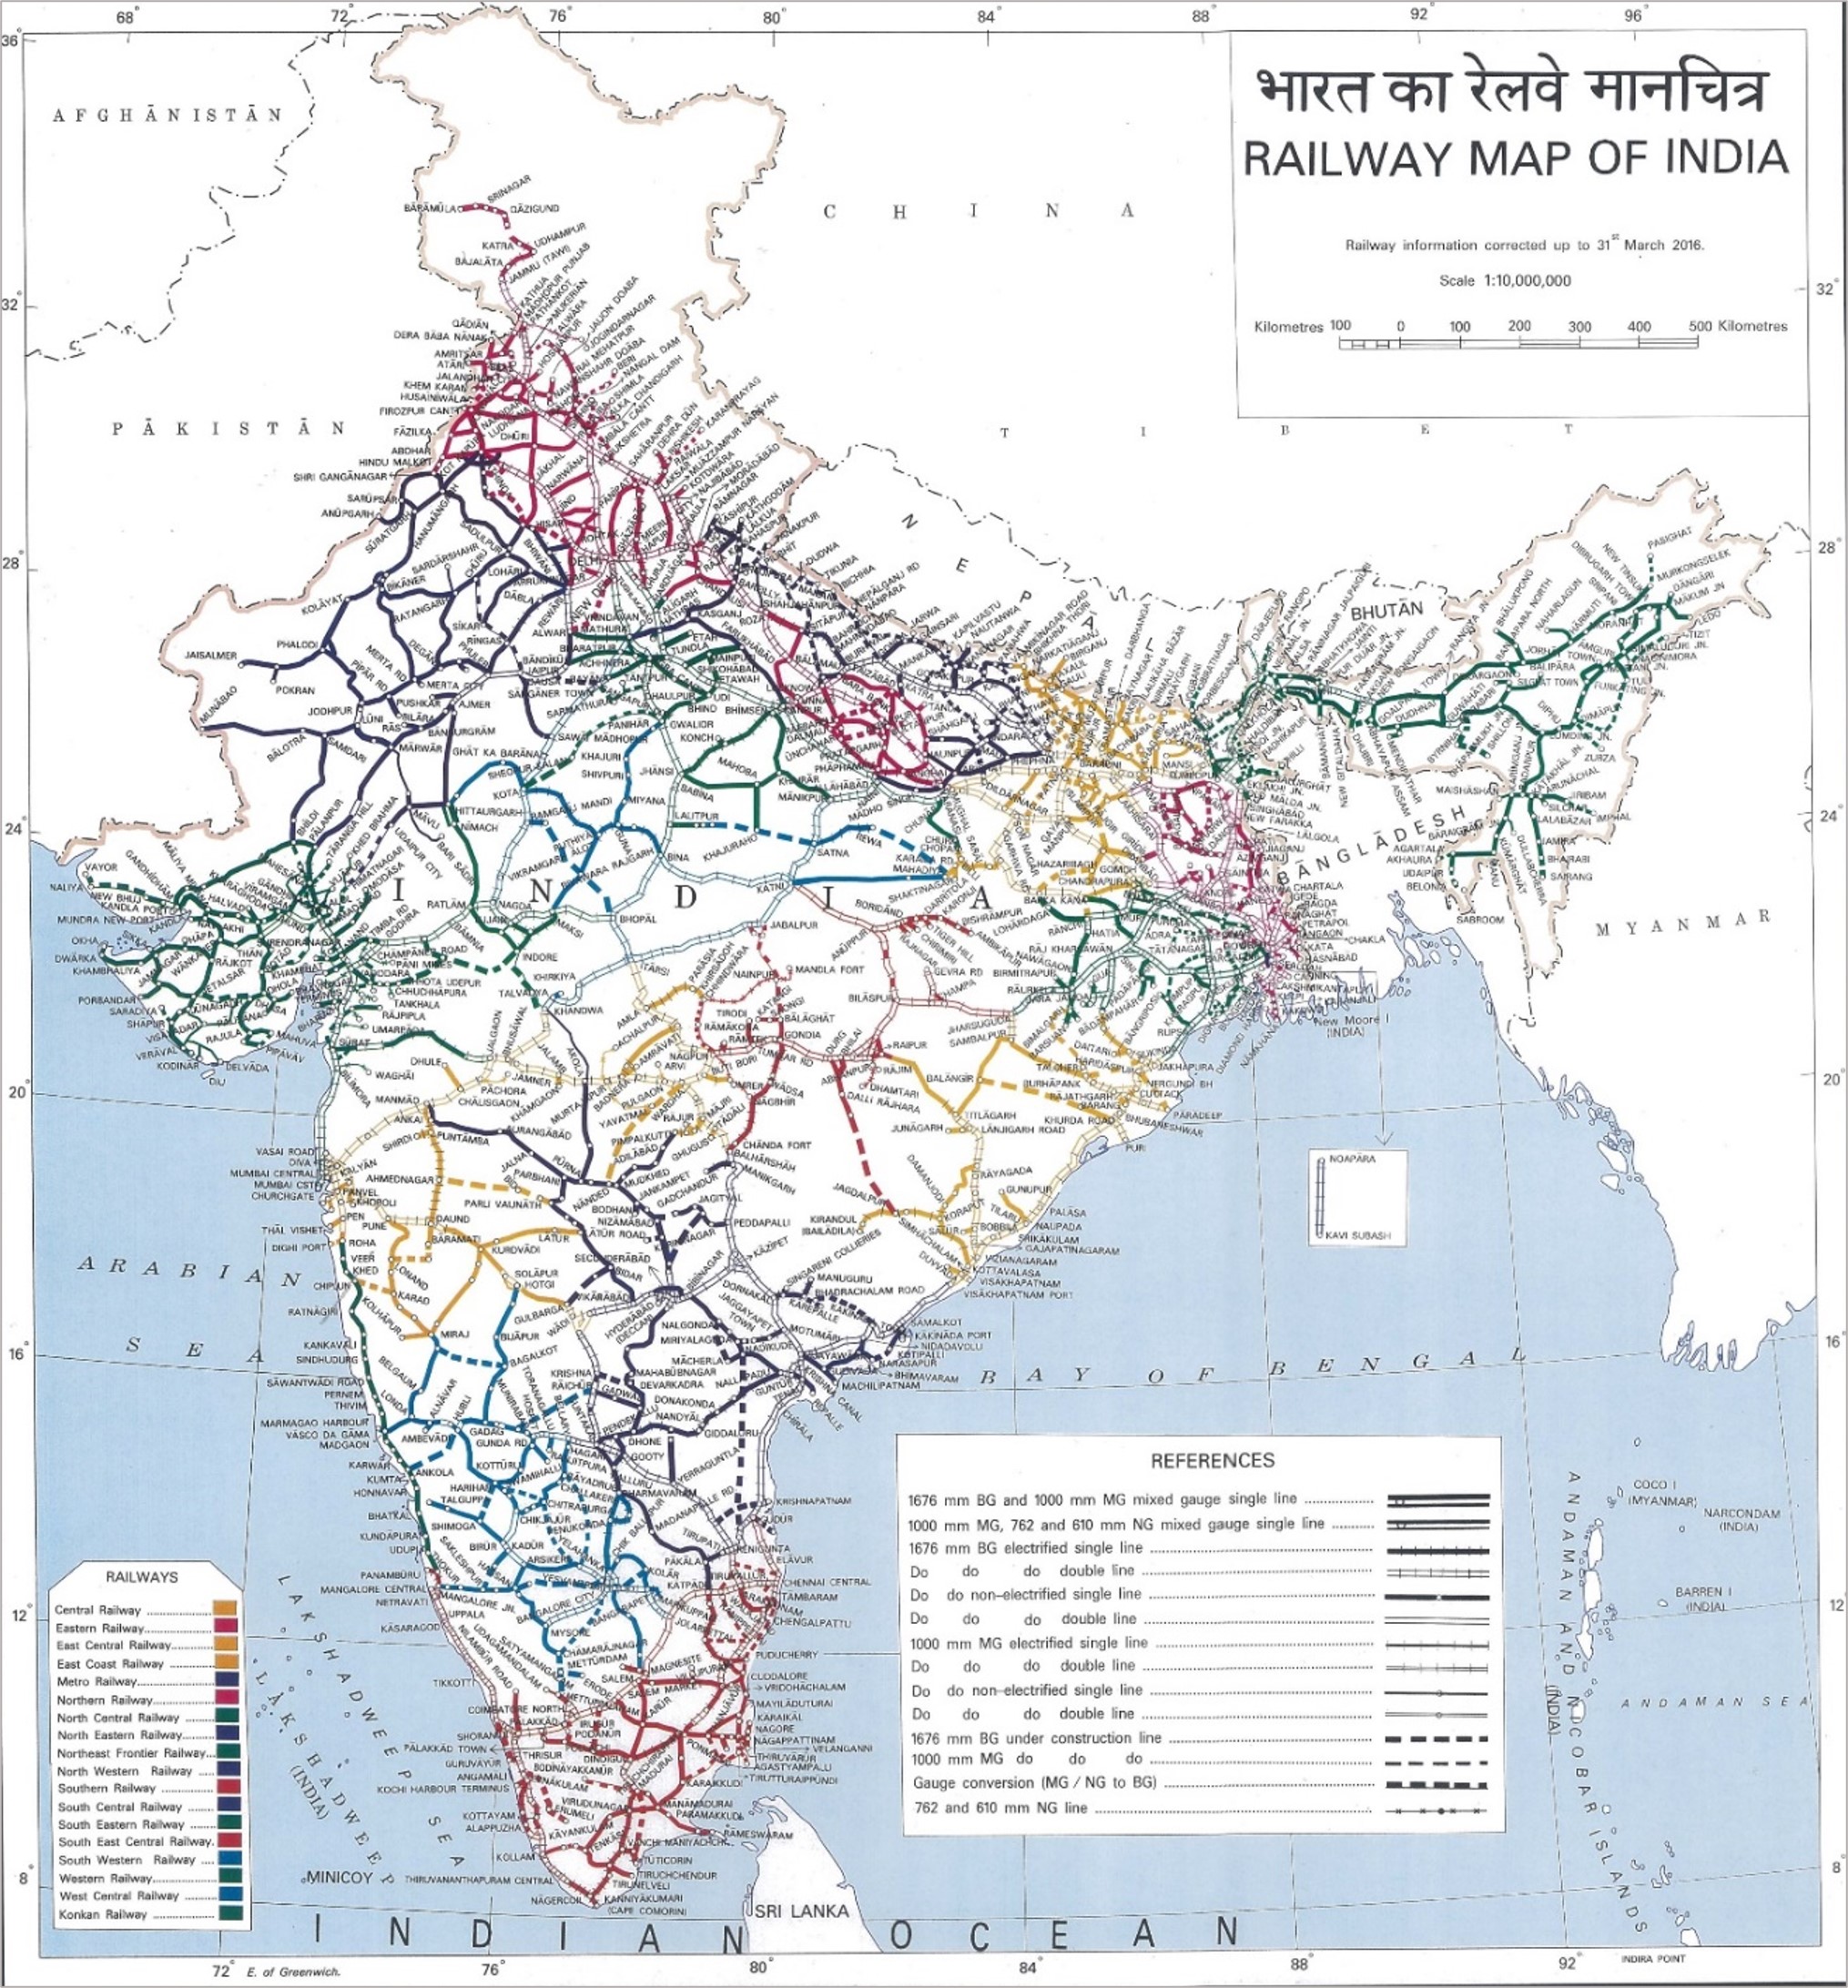 Land under Indian Railways